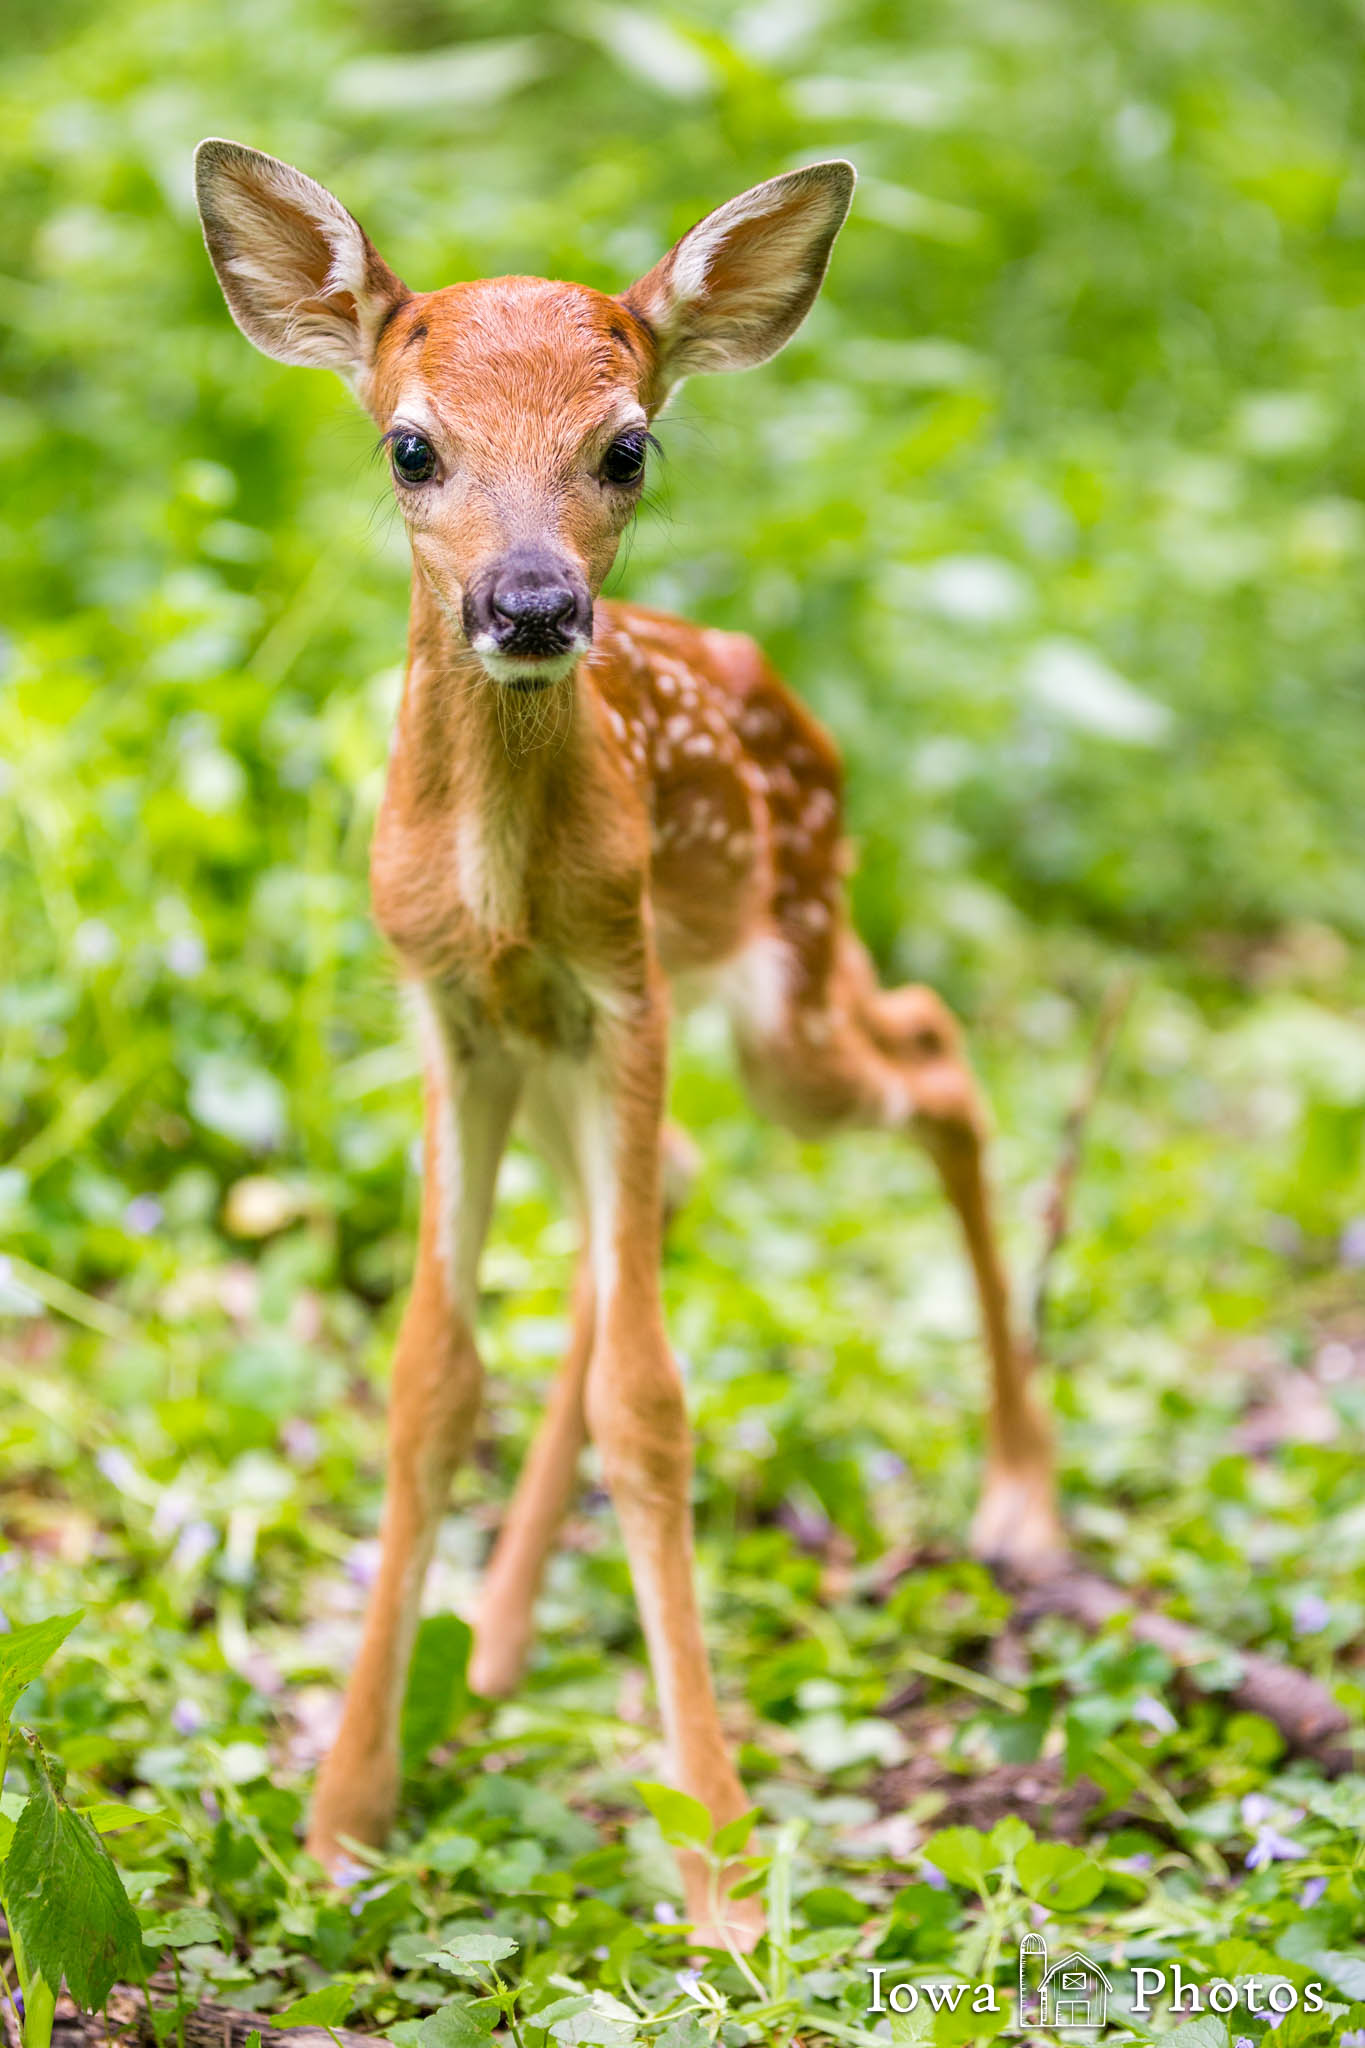 newborn white tailed deer